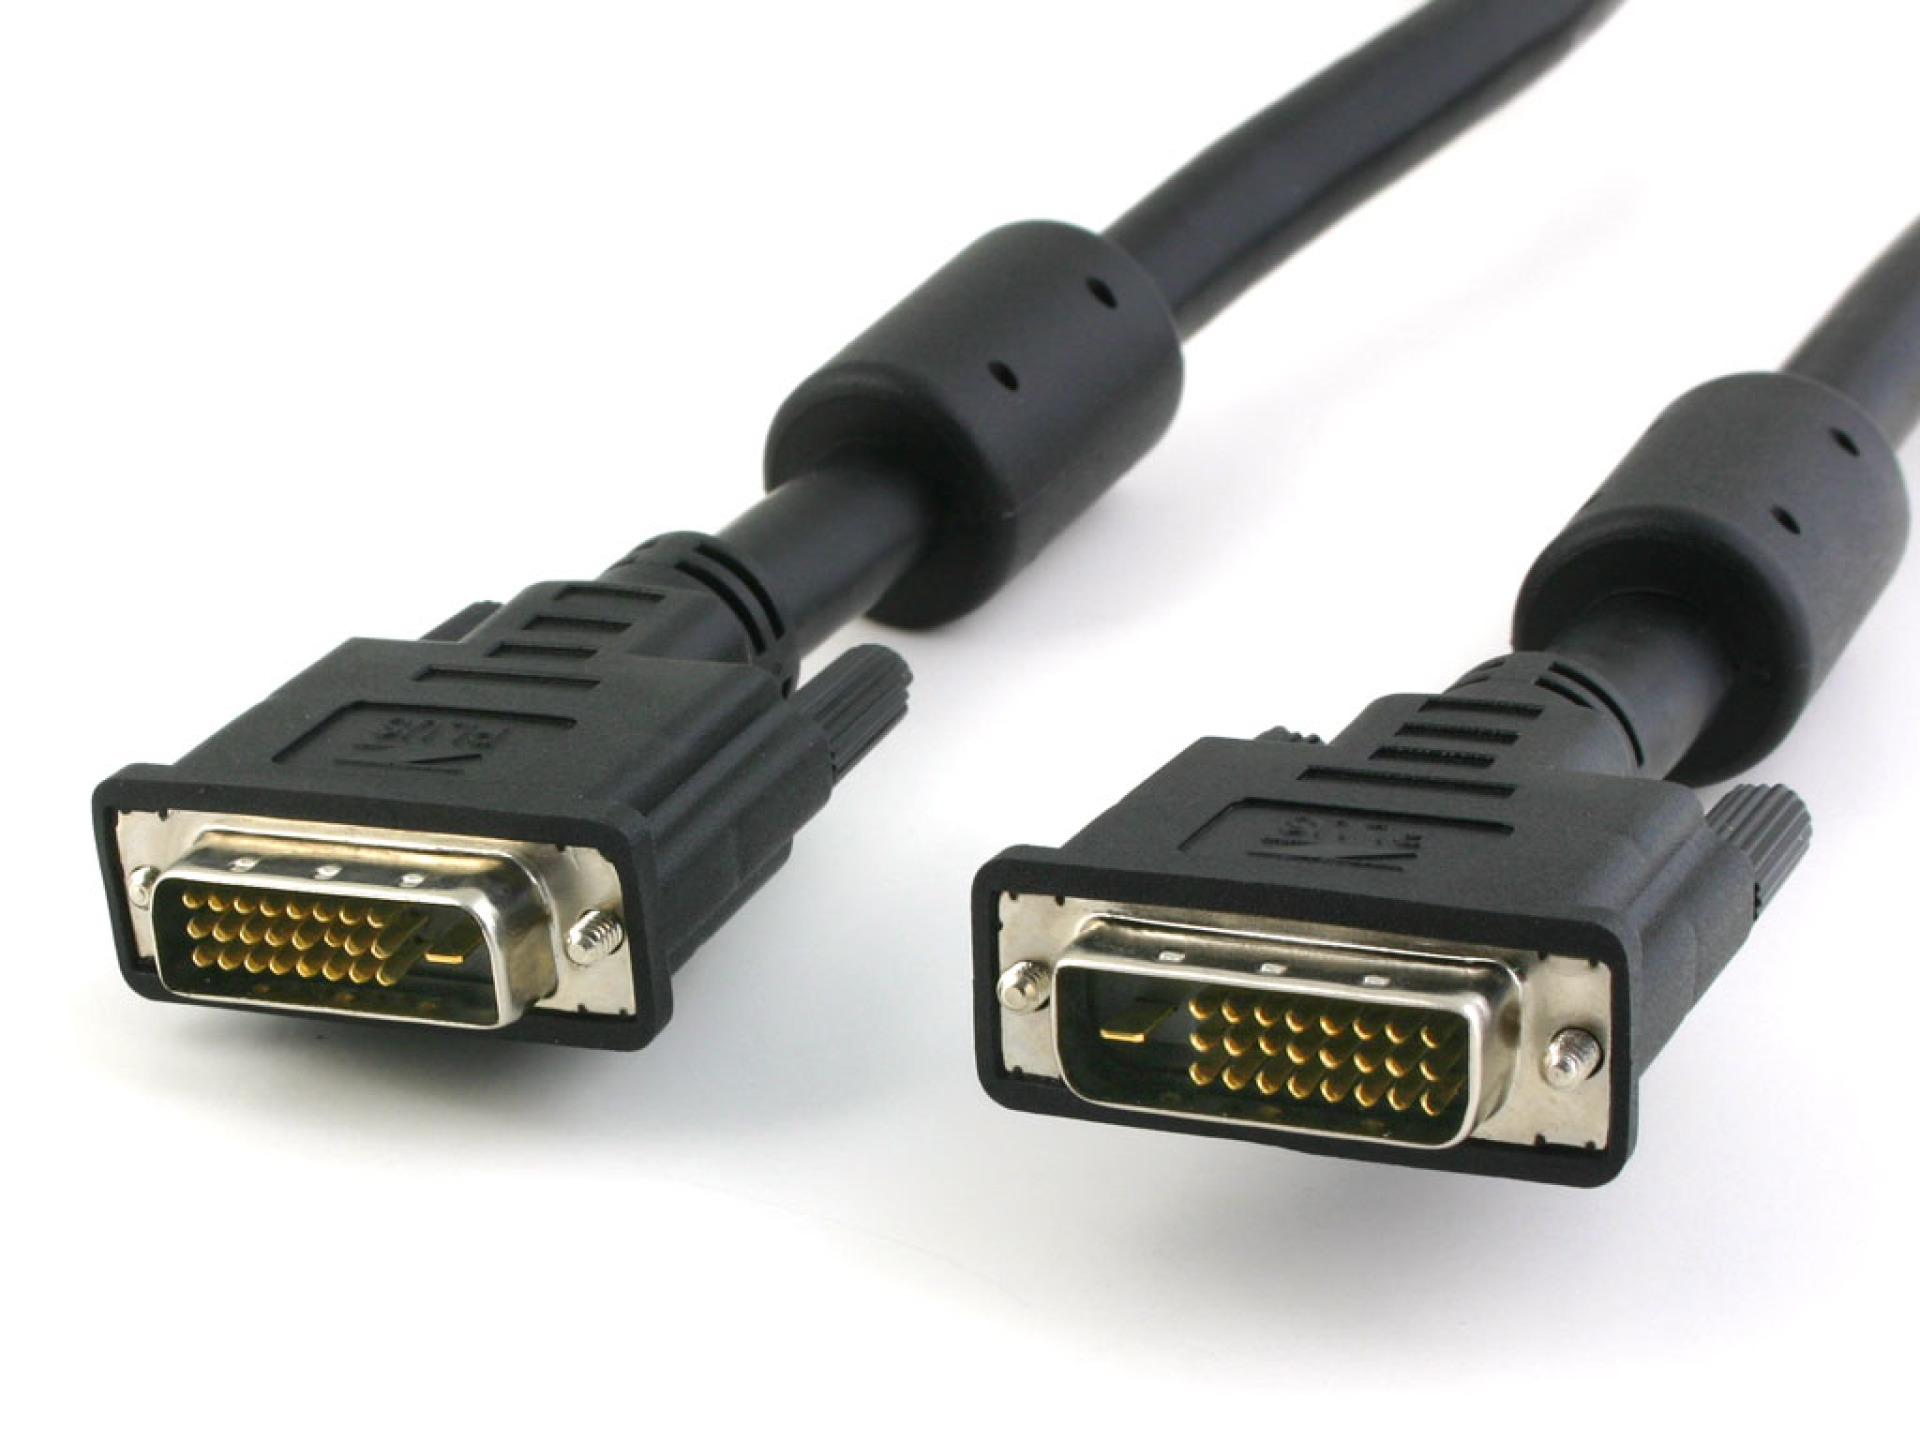 DVI-D Dual-Link Anschlusskabel Stecker/Stecker mit Ferrit, schwarz, 10 m